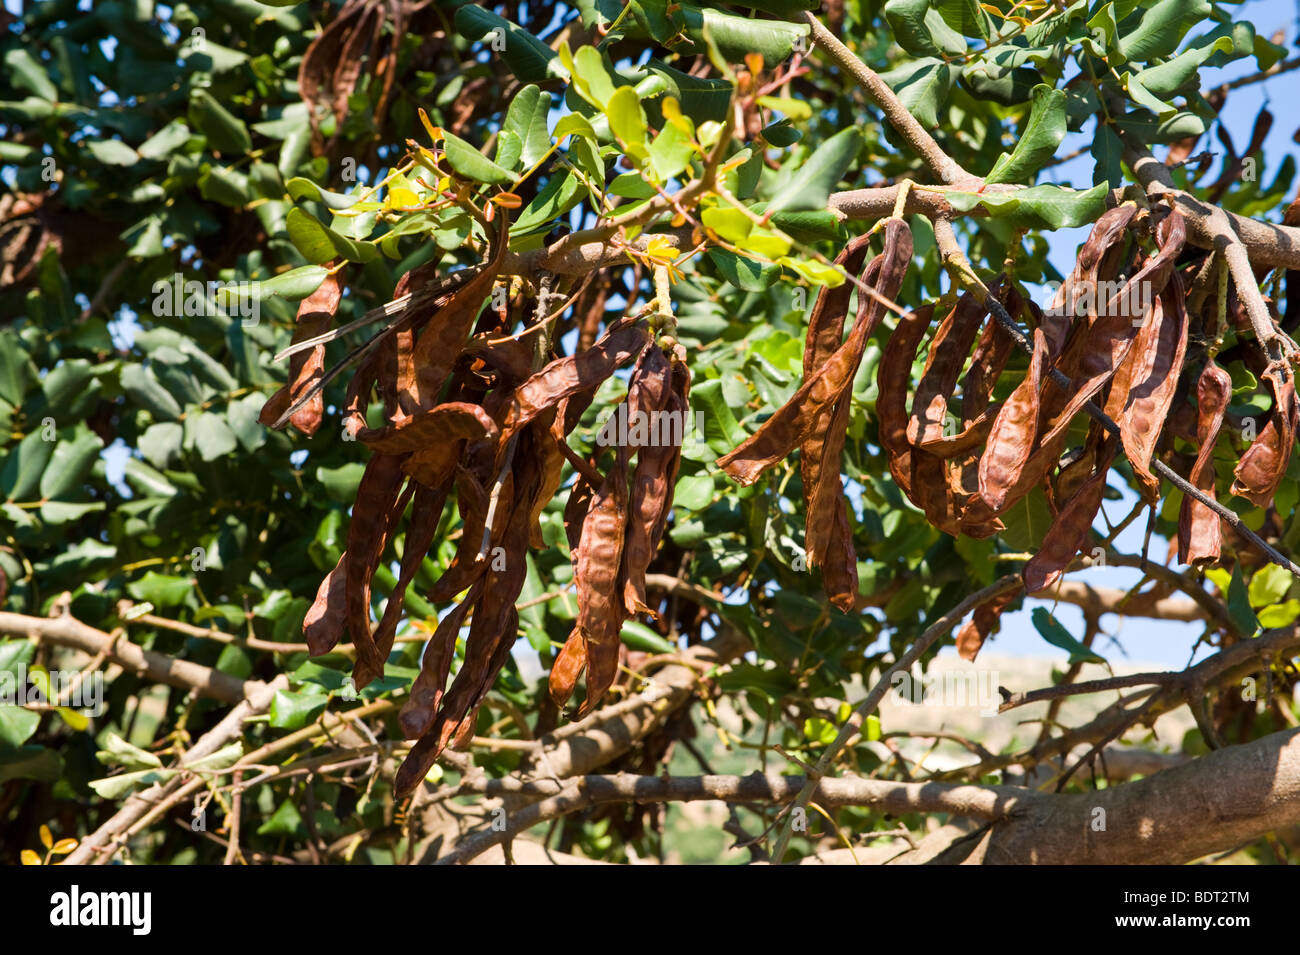 Johannisbrot Schoten Trocknen auf dem Baum wächst wild an alten Skala auf  der griechischen Mittelmeer Insel von Kefalonia Griechenland GR  Stockfotografie - Alamy